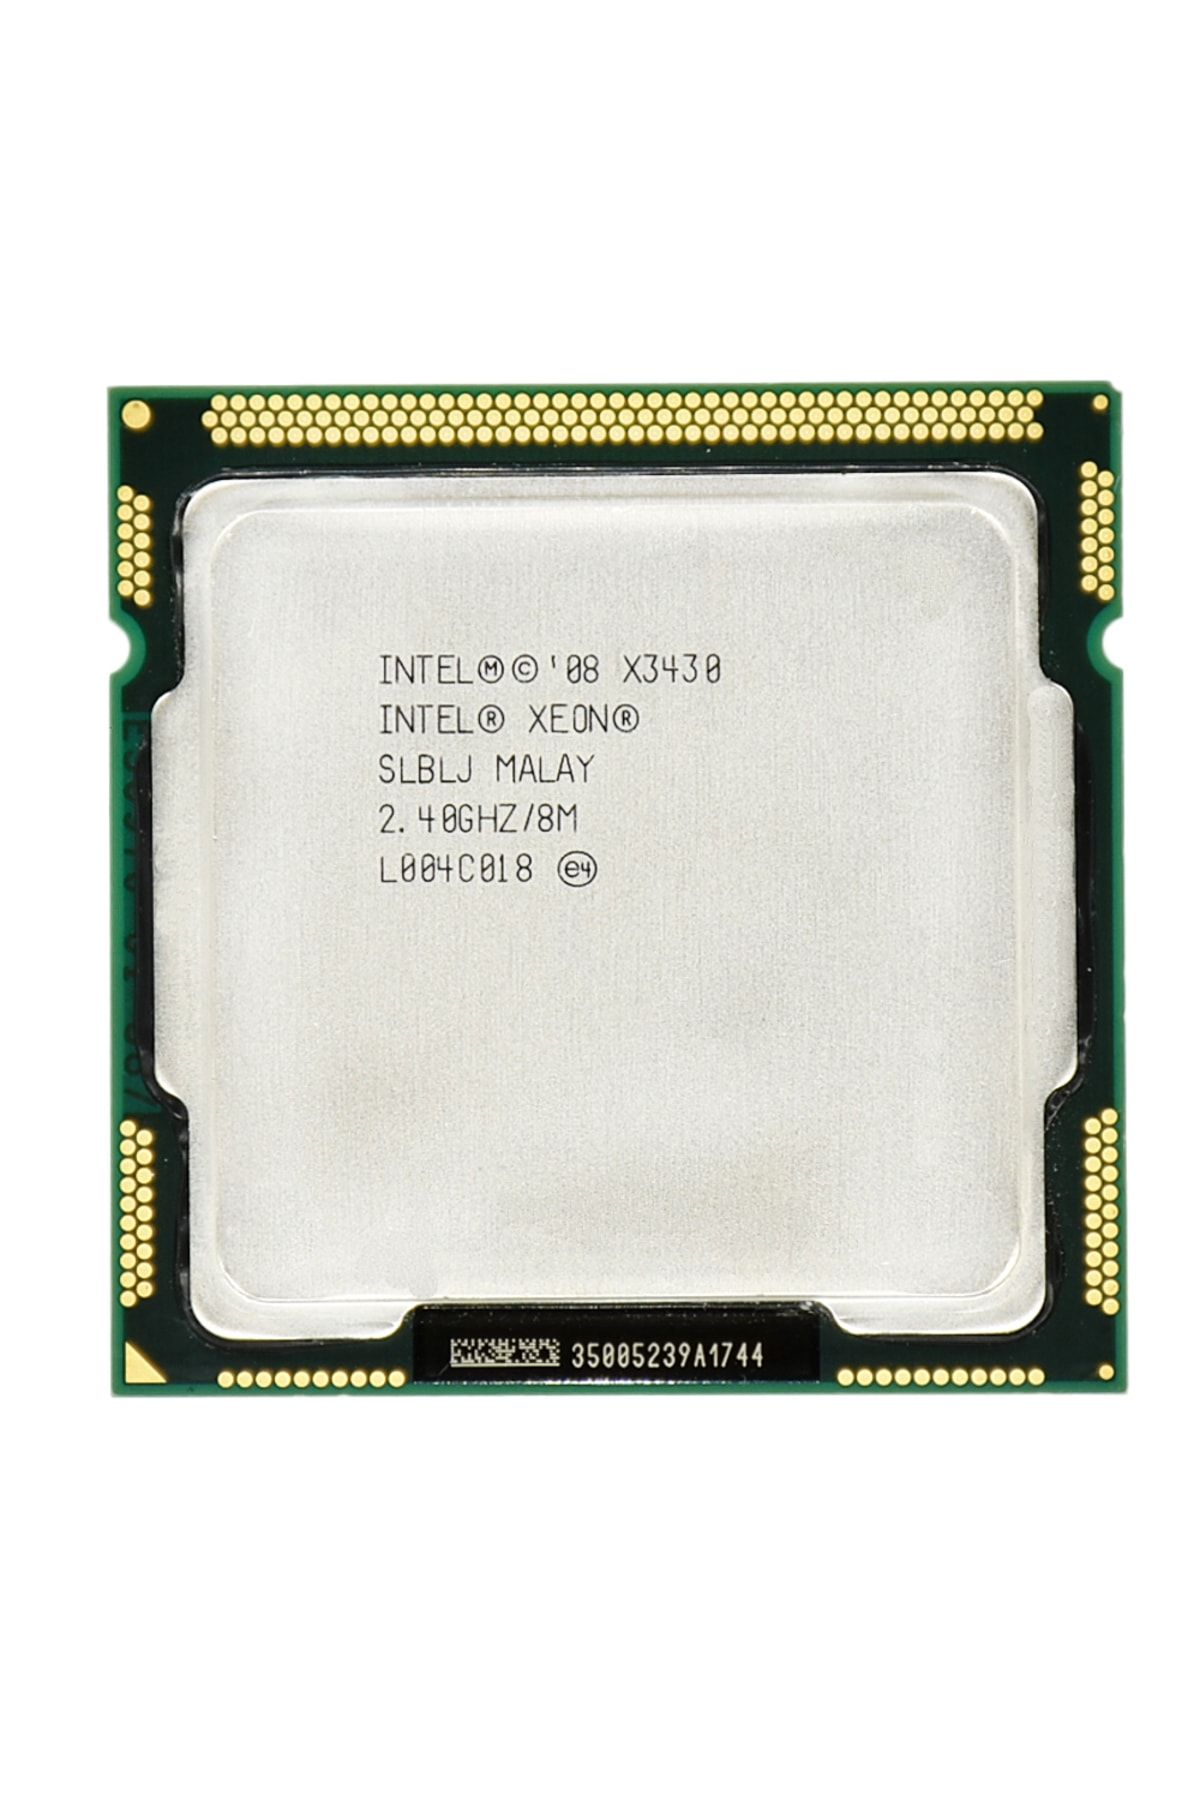 Intel Xeon X3430 2.4GHz LGA1156 8 MB Cache 95W İşlemci Yenilenmiş